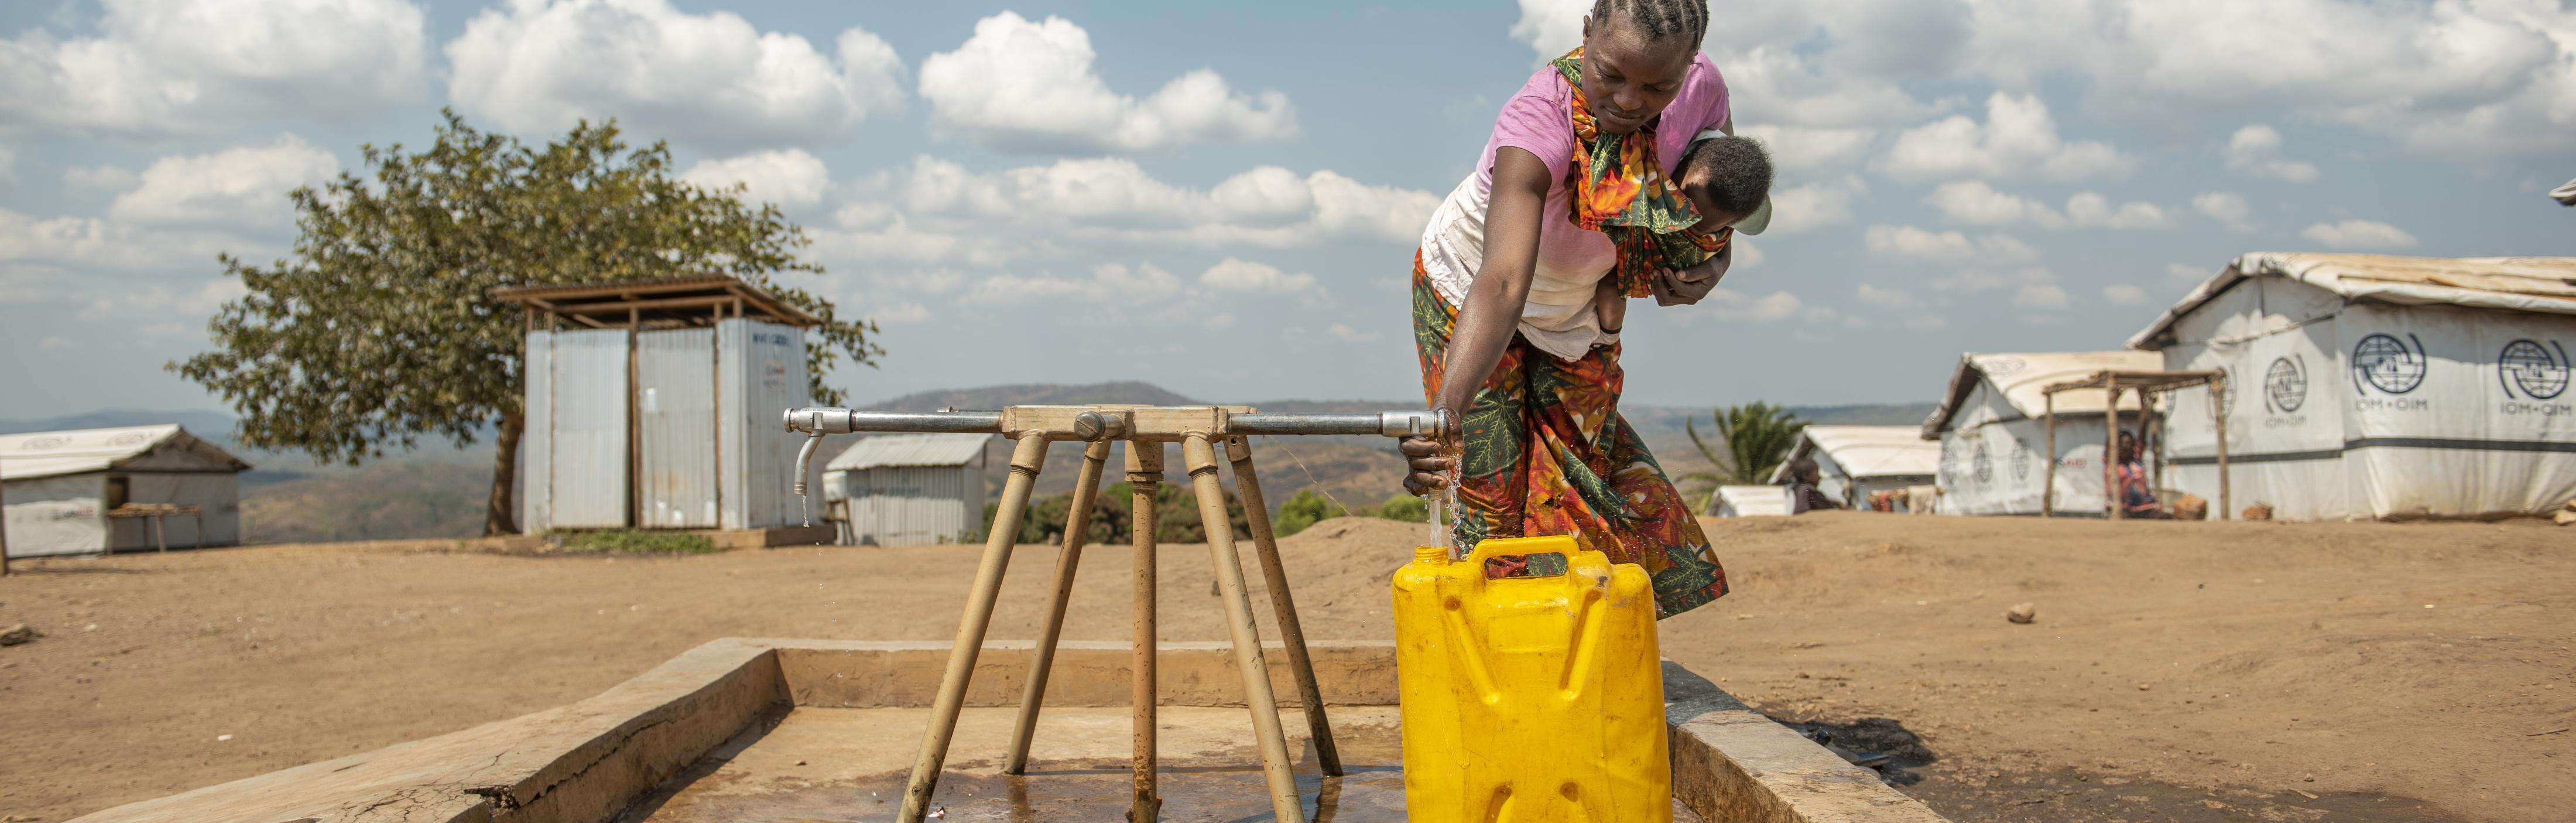 Eine Frau steht an einem Wasserhahn und befüllt einen Kanister mit Wasser.